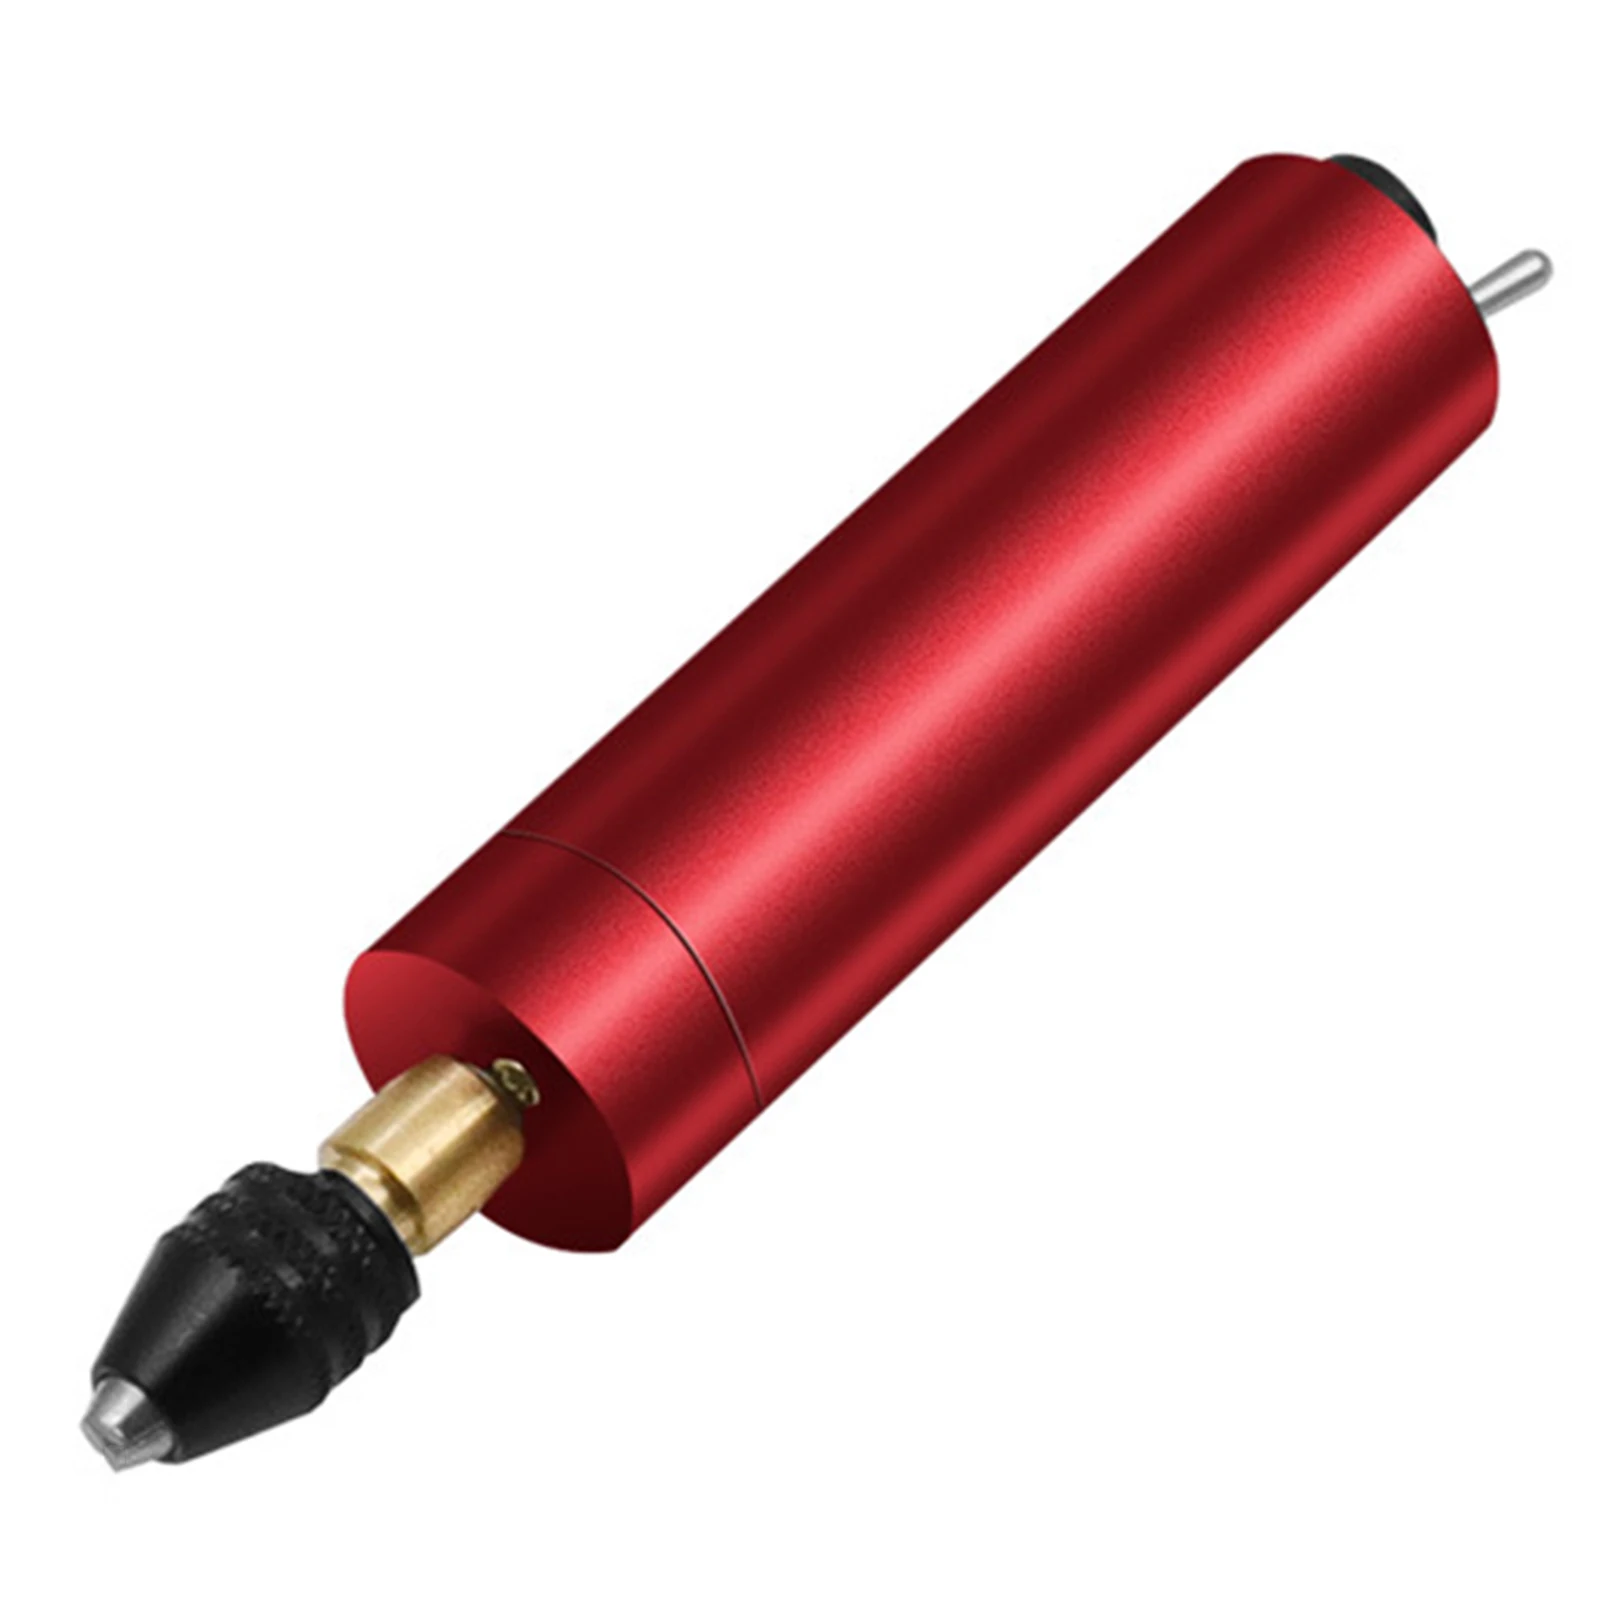 

Красная USB мини электрическая гравировальная ручка, используется для гравировки резьбы по дереву, ремесленных проектов, творчества «сделай...